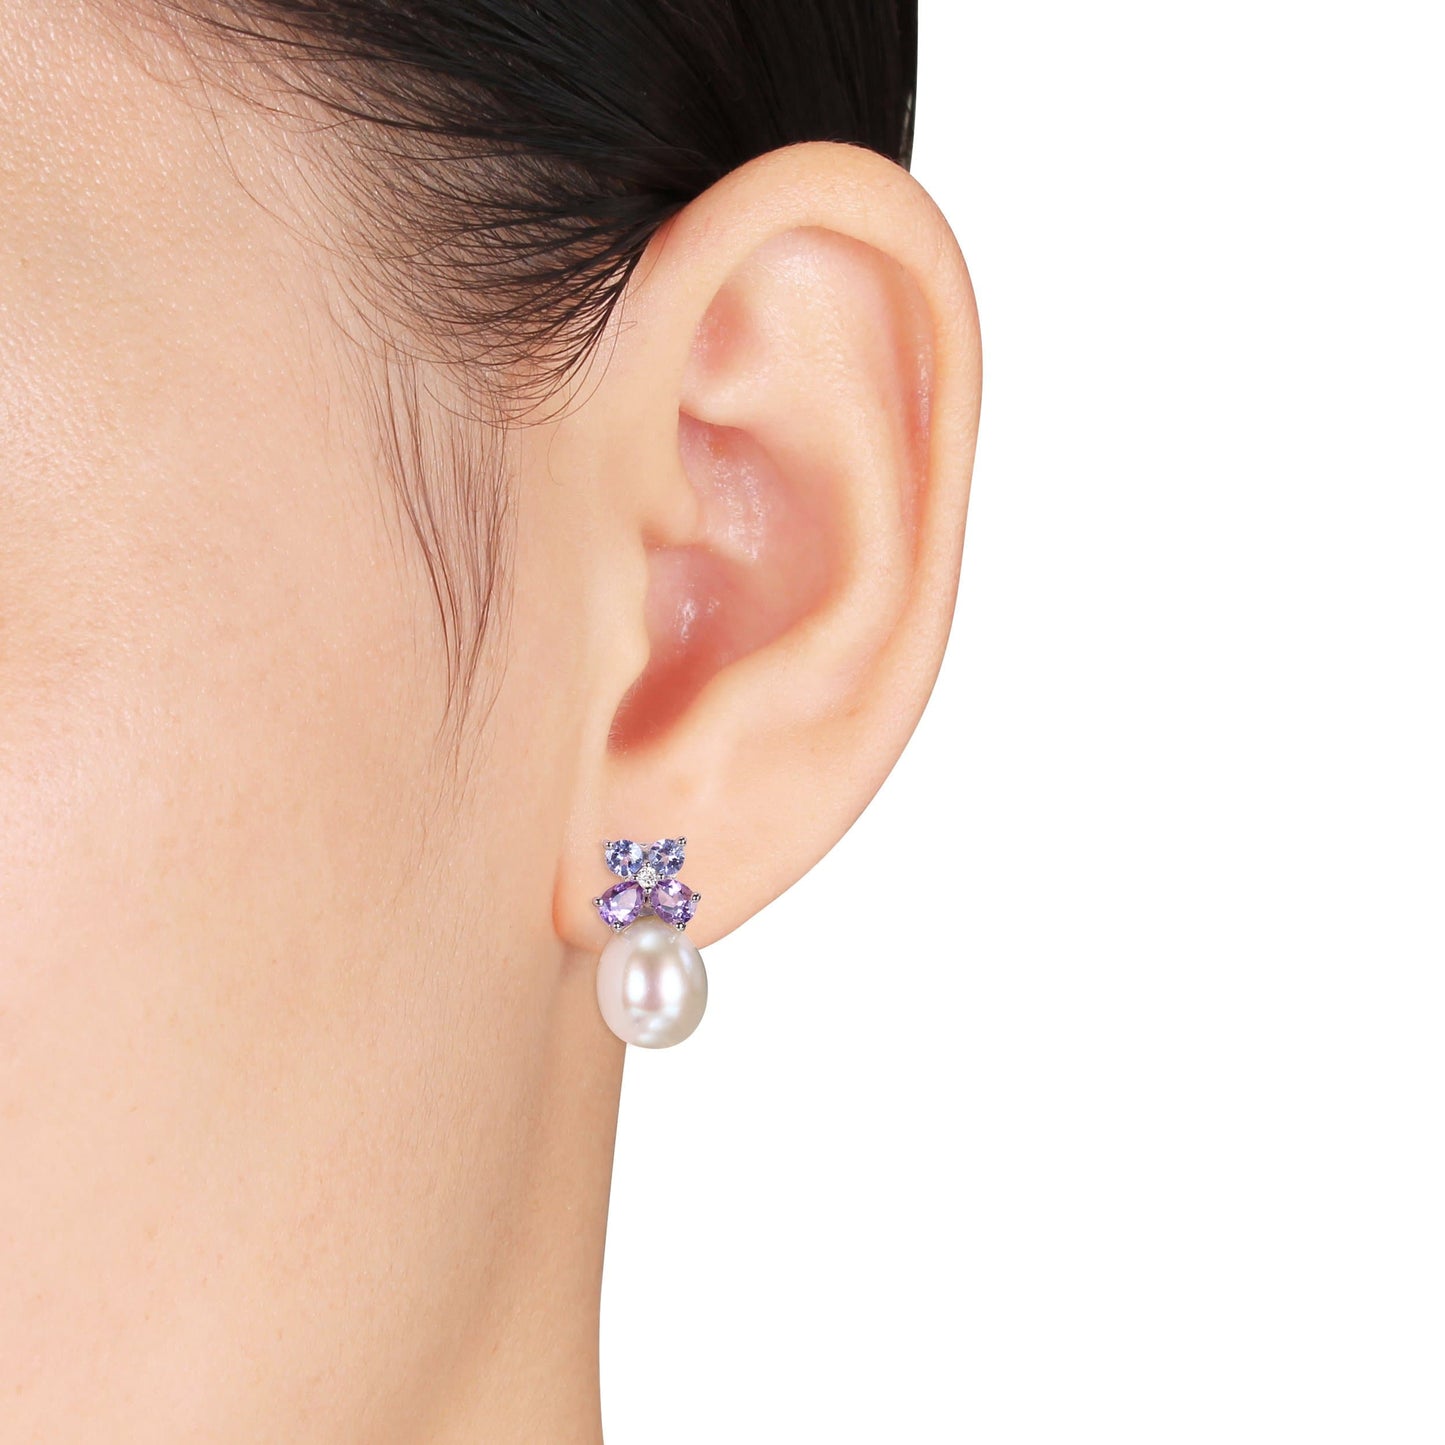 Sophia B 1ct Pearl & Amethyst White Stud Earrings